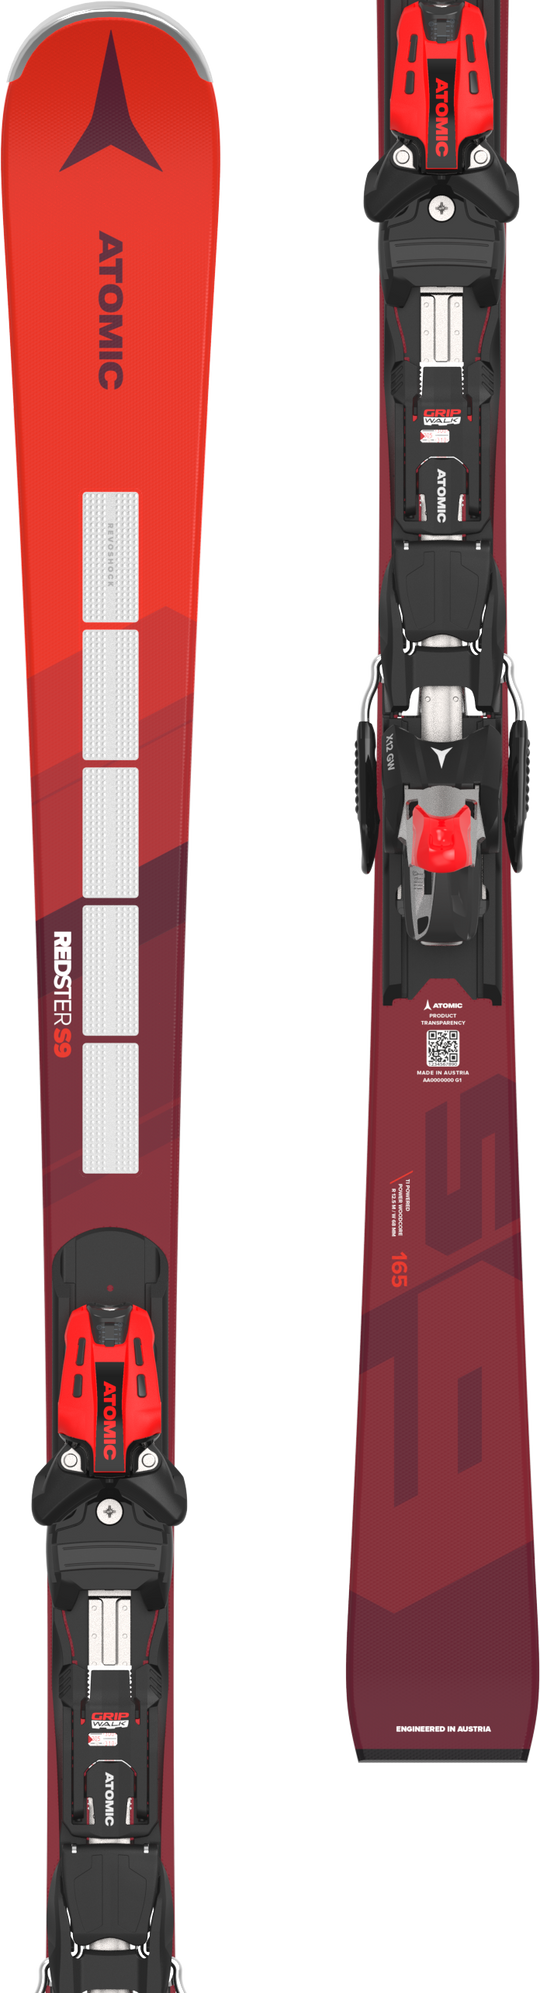 Redster Skis – Atomic Japan